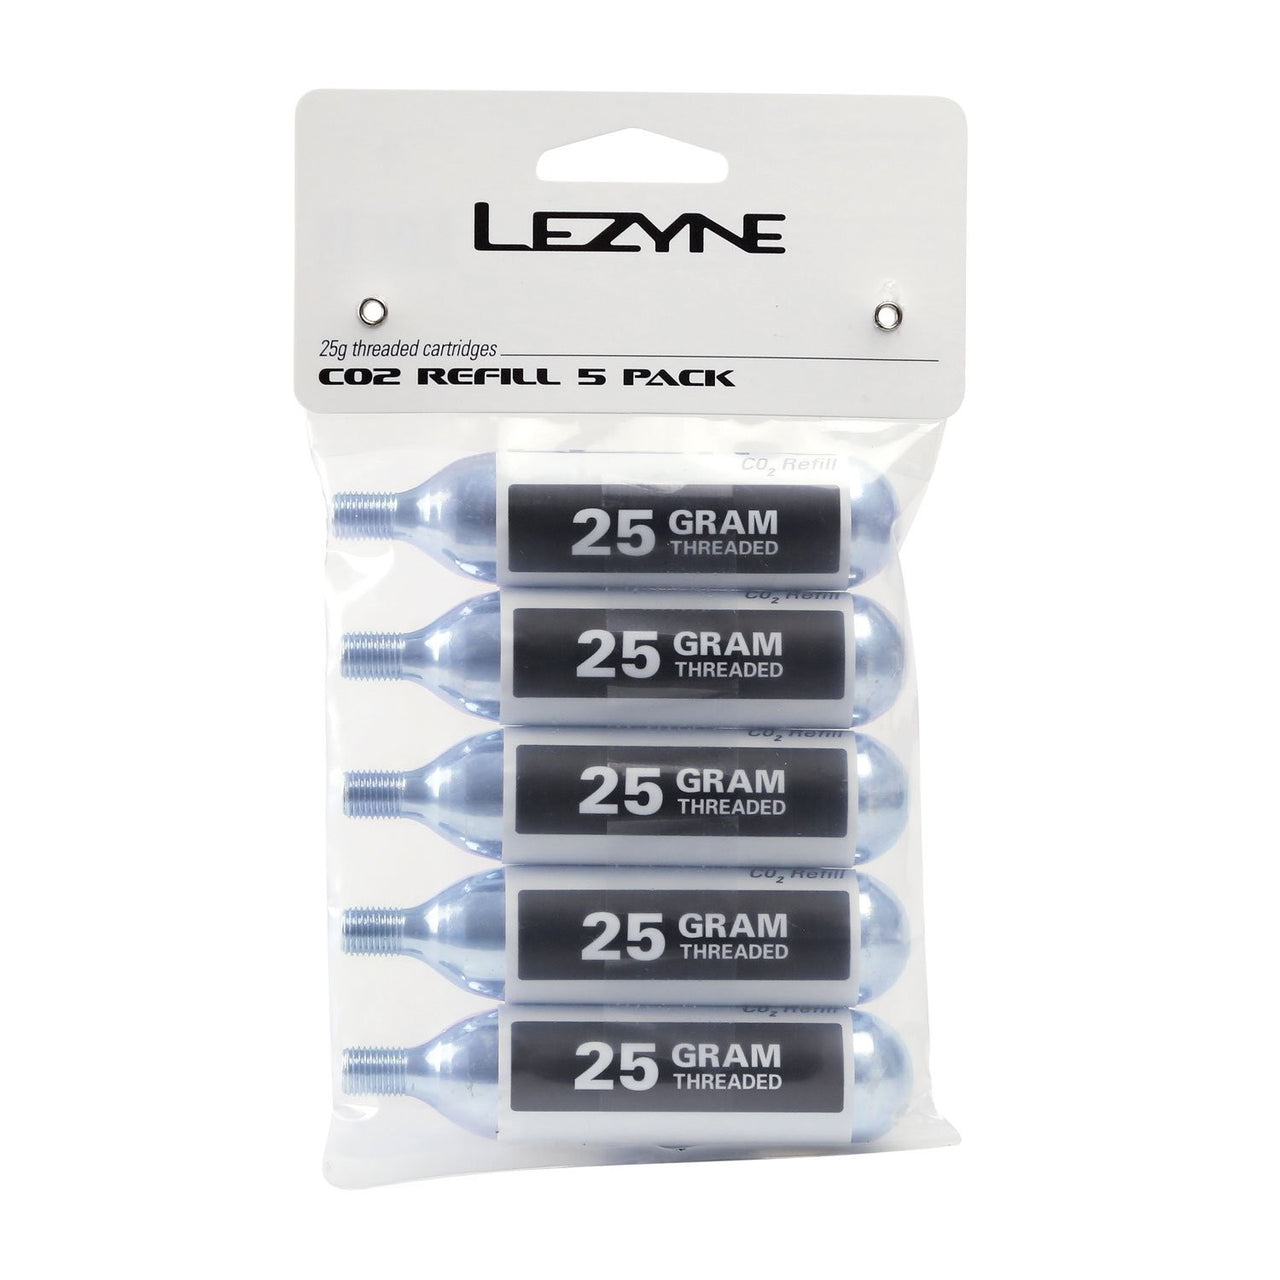 Lezyne Co2 Refill 5 Pack 25g Threaded